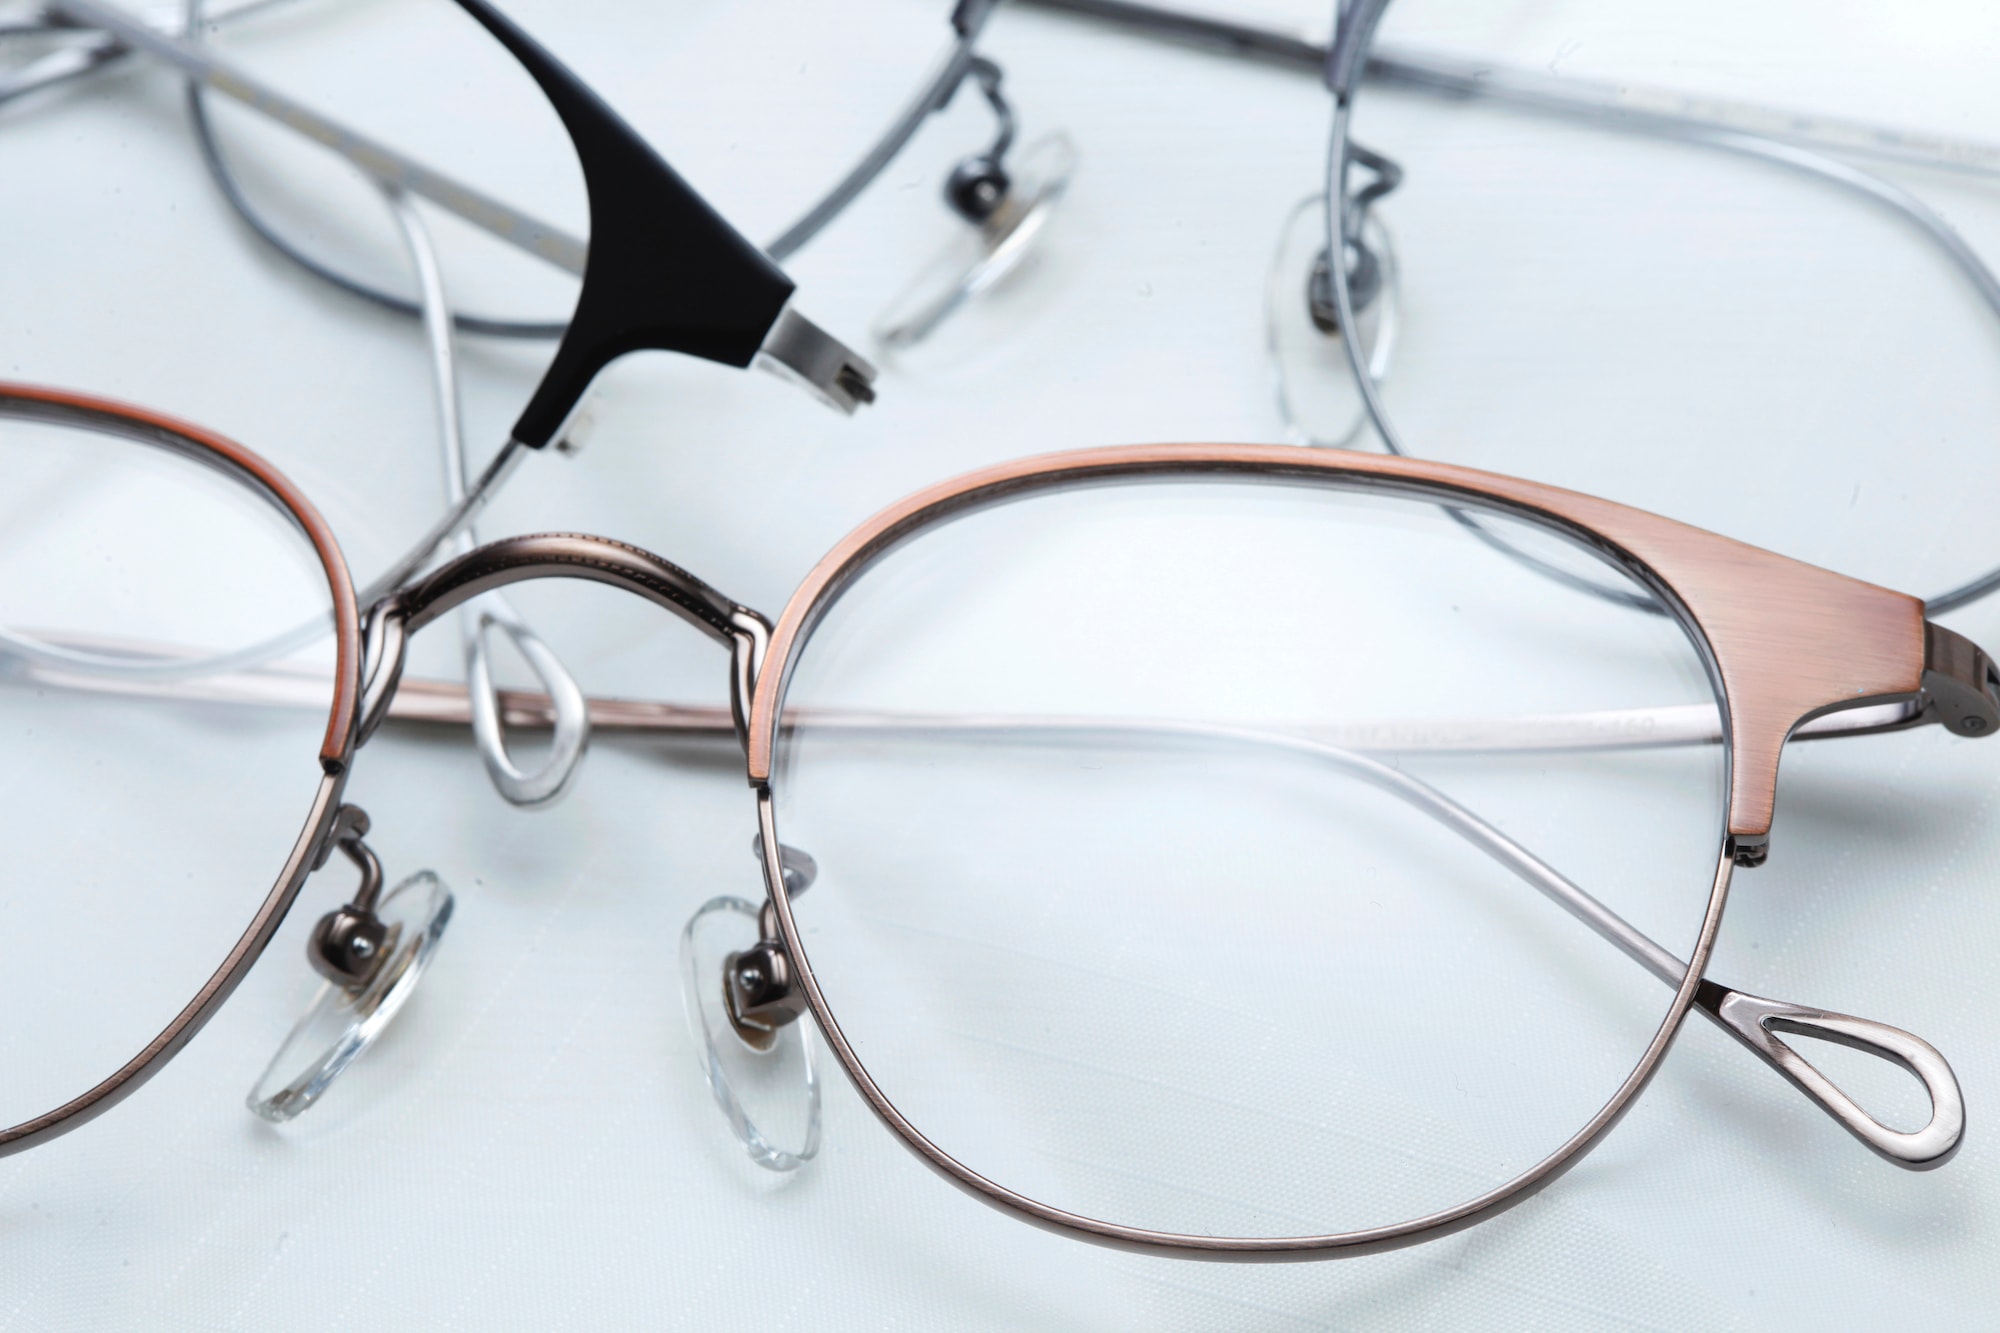 復古眼鏡品牌 UNITED VINTAGE 推出鈦金屬眼鏡新作